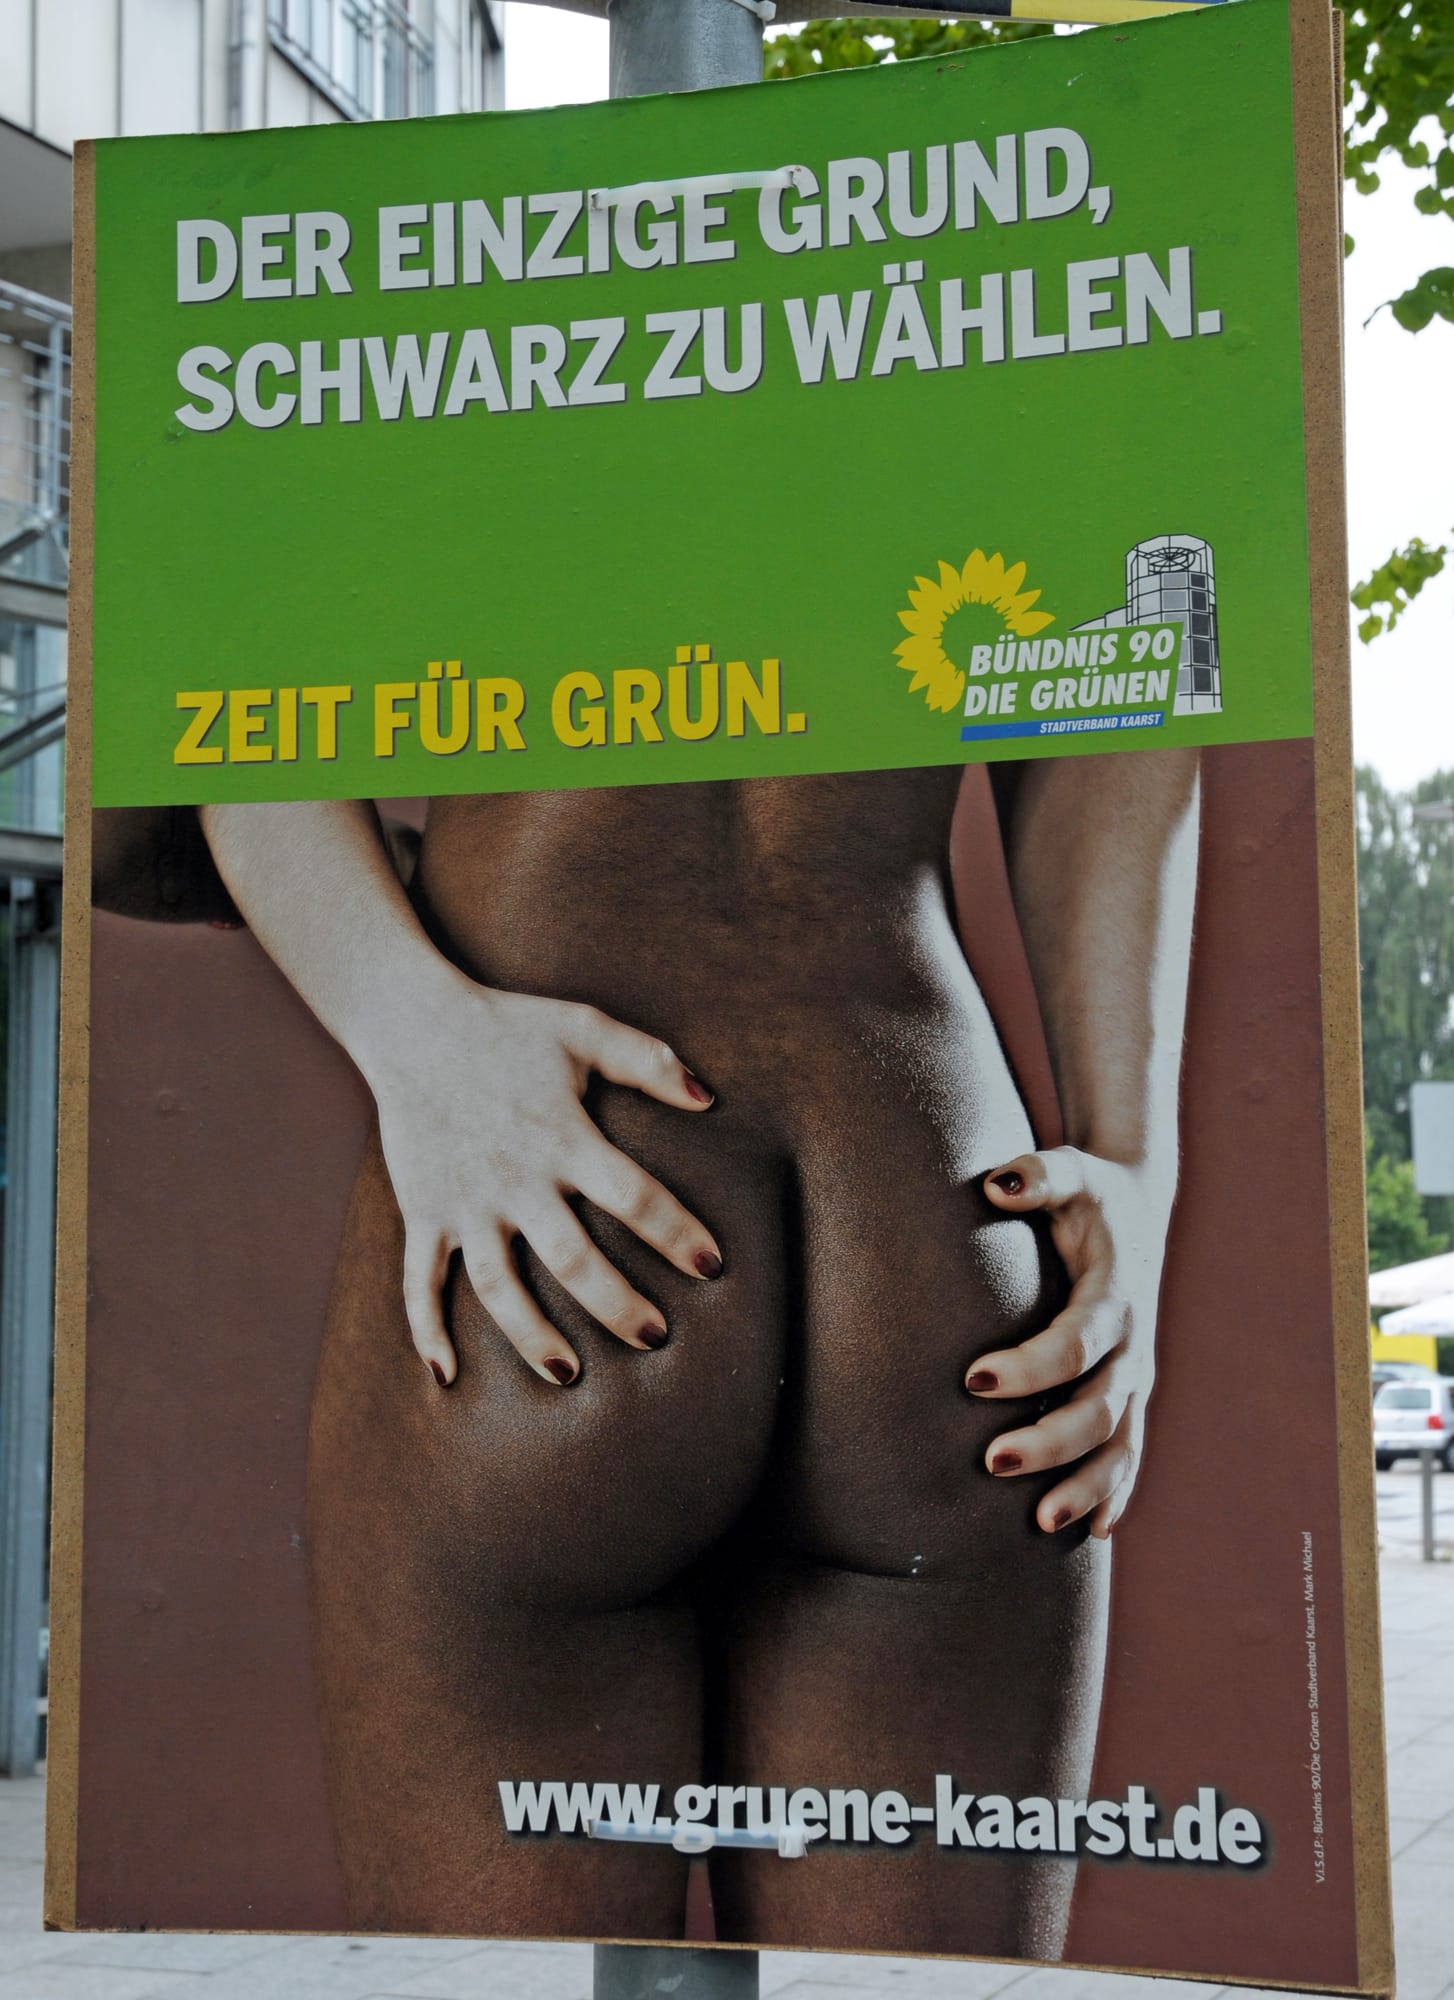 Nicht selten versuchen Parteien, mit ihren Plakaten zu provozieren. Wie dieses Plakat der Grünen aus dem Nordrhein-Westfälischen Kaarst zeigt, gelingt das nicht immer auf politisch korrekte Art und Weise.